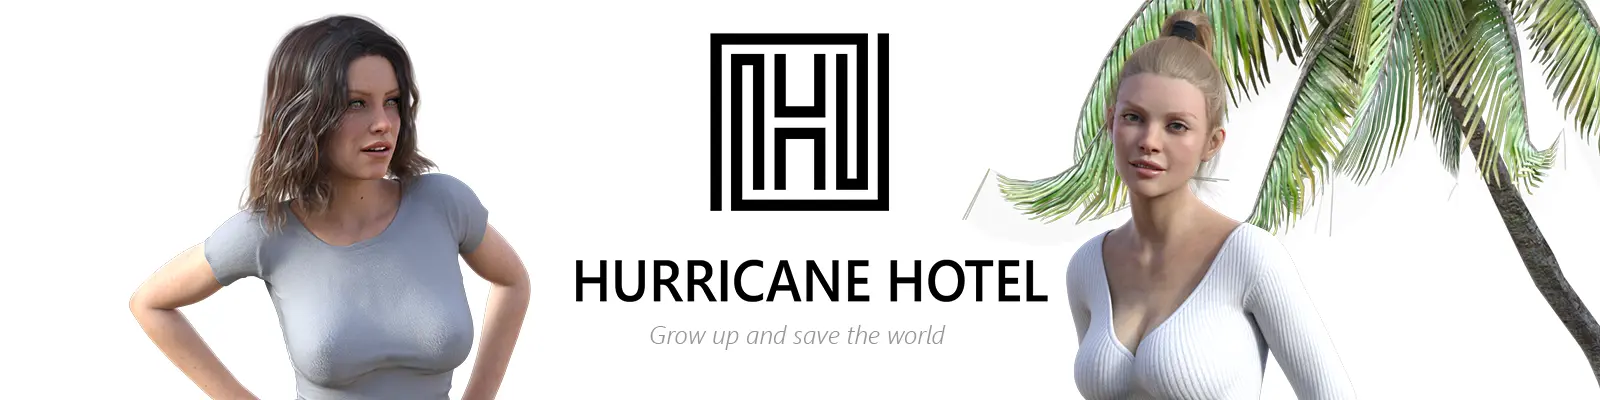 Hurricane Hotel main image